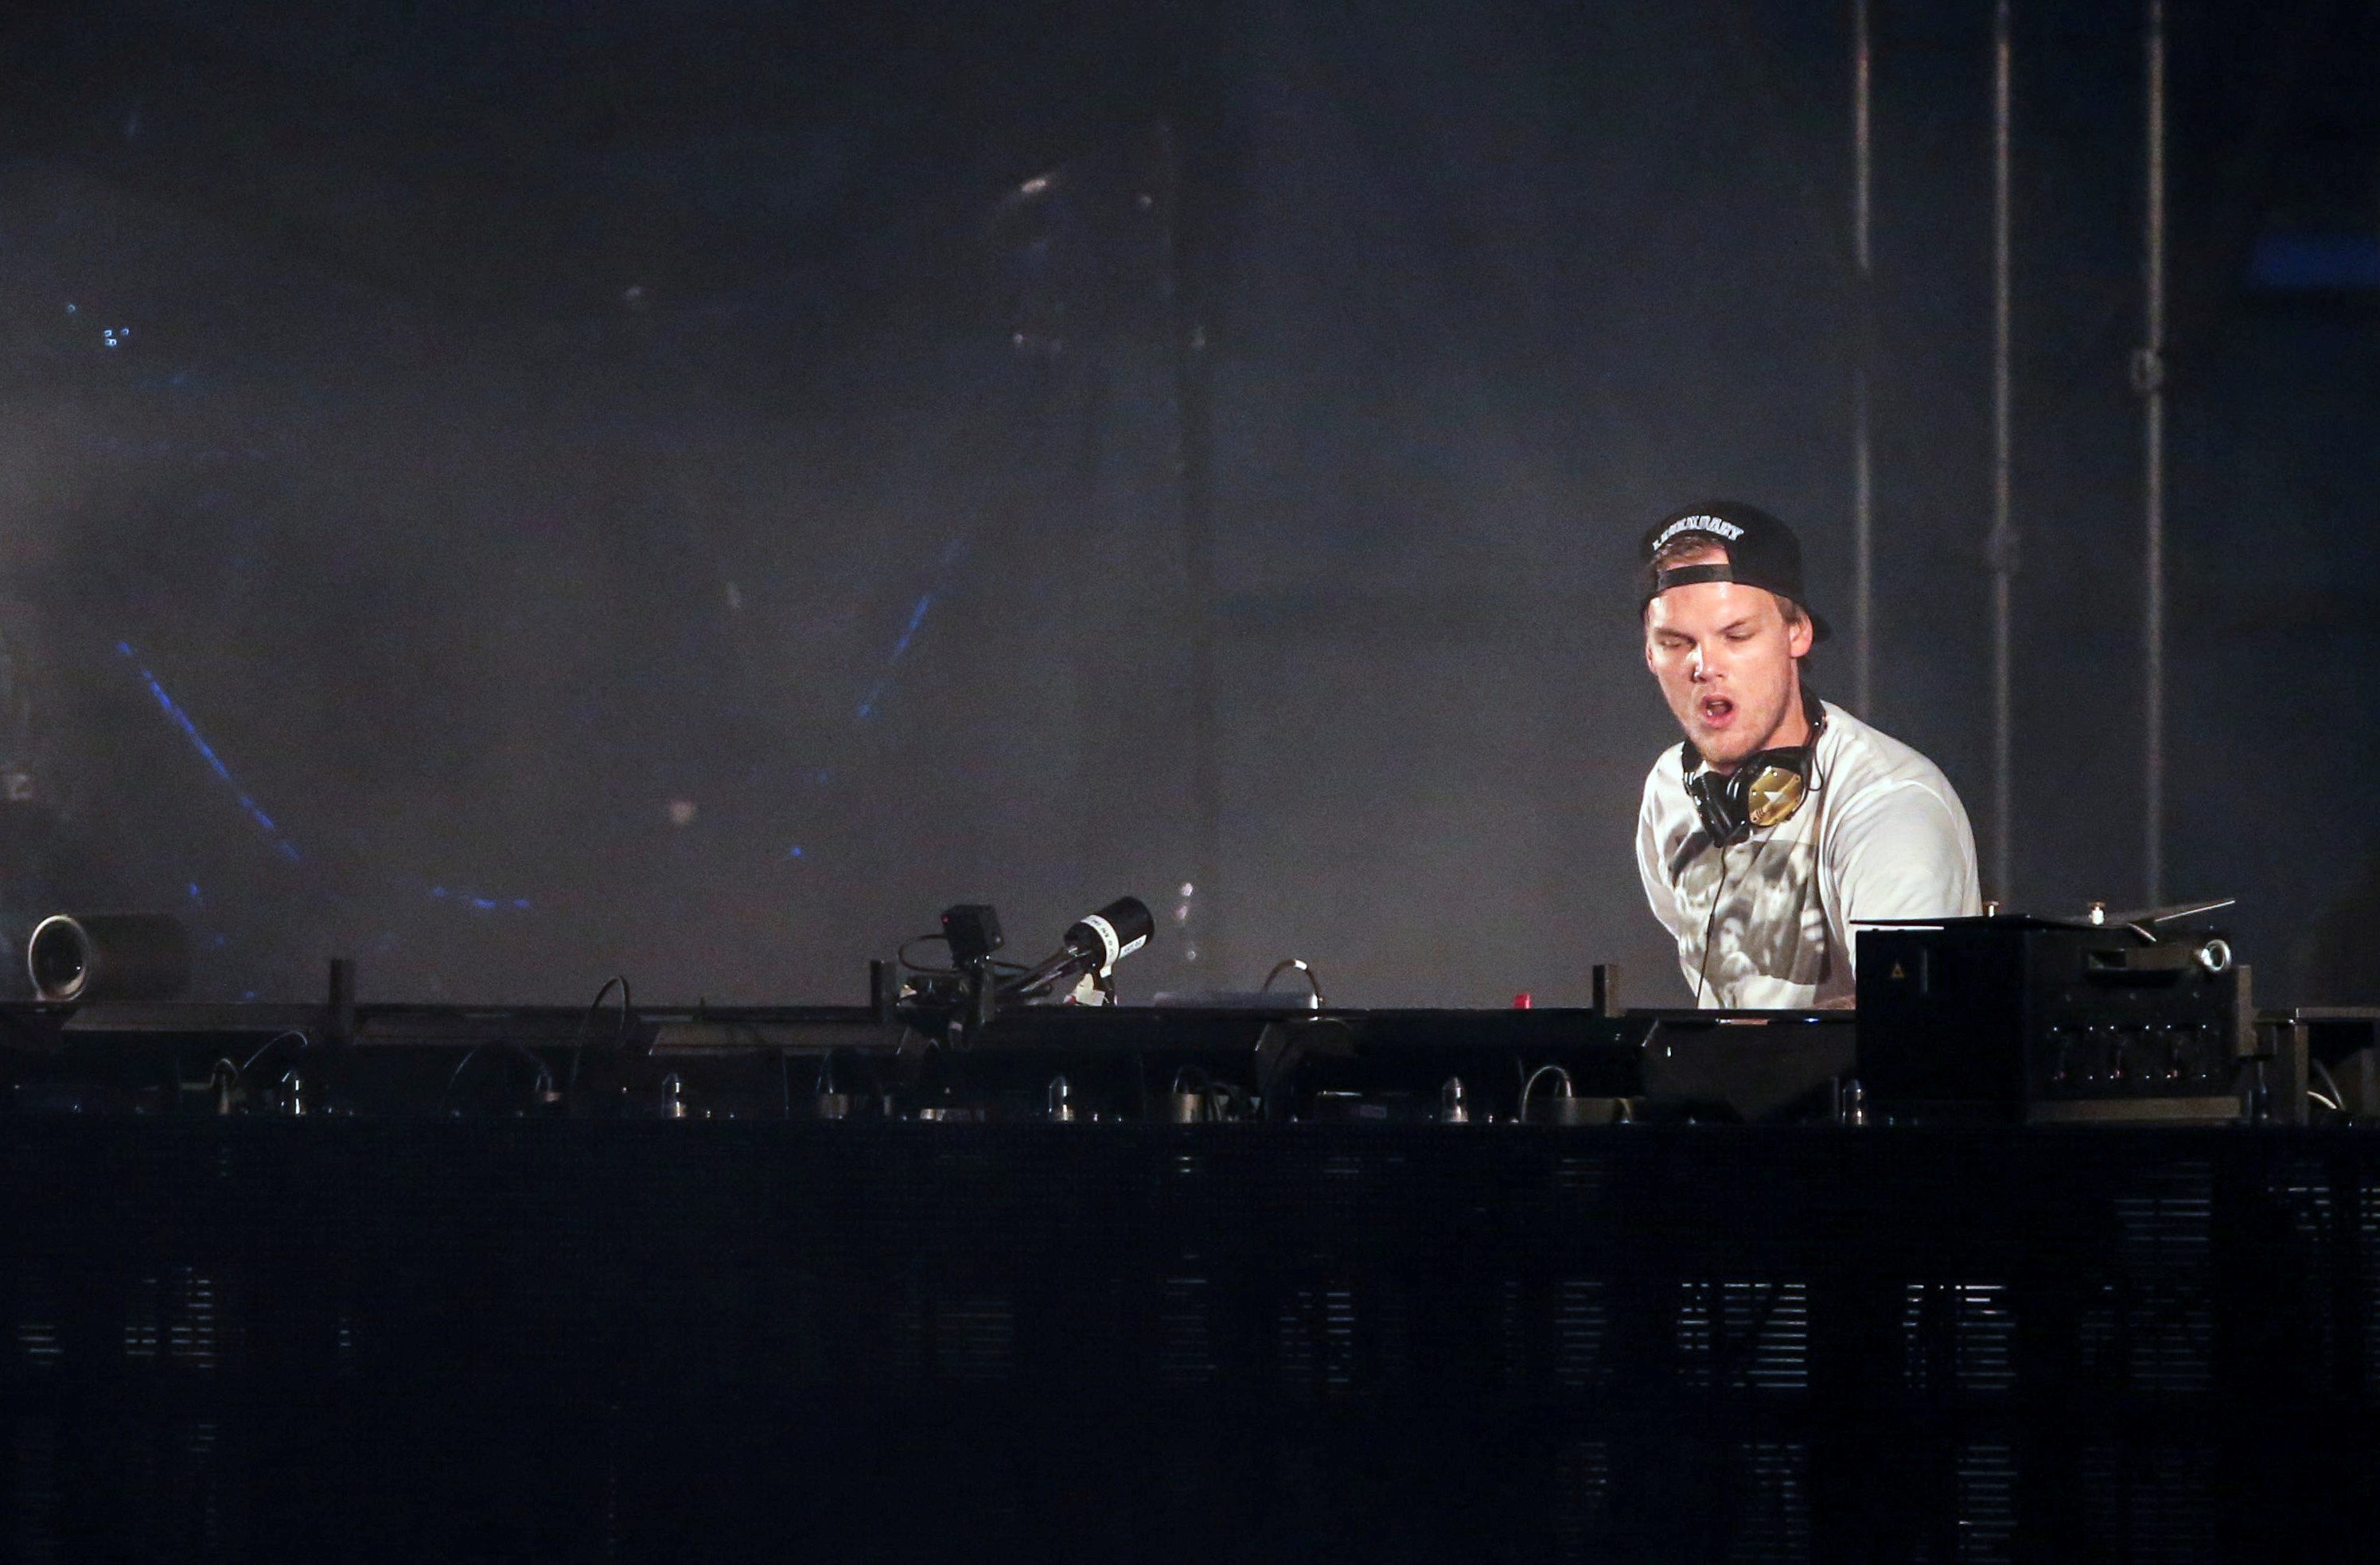 Stockholm concert venue renamed ‘Avicii Arena’ in tribute to DJ Avicii